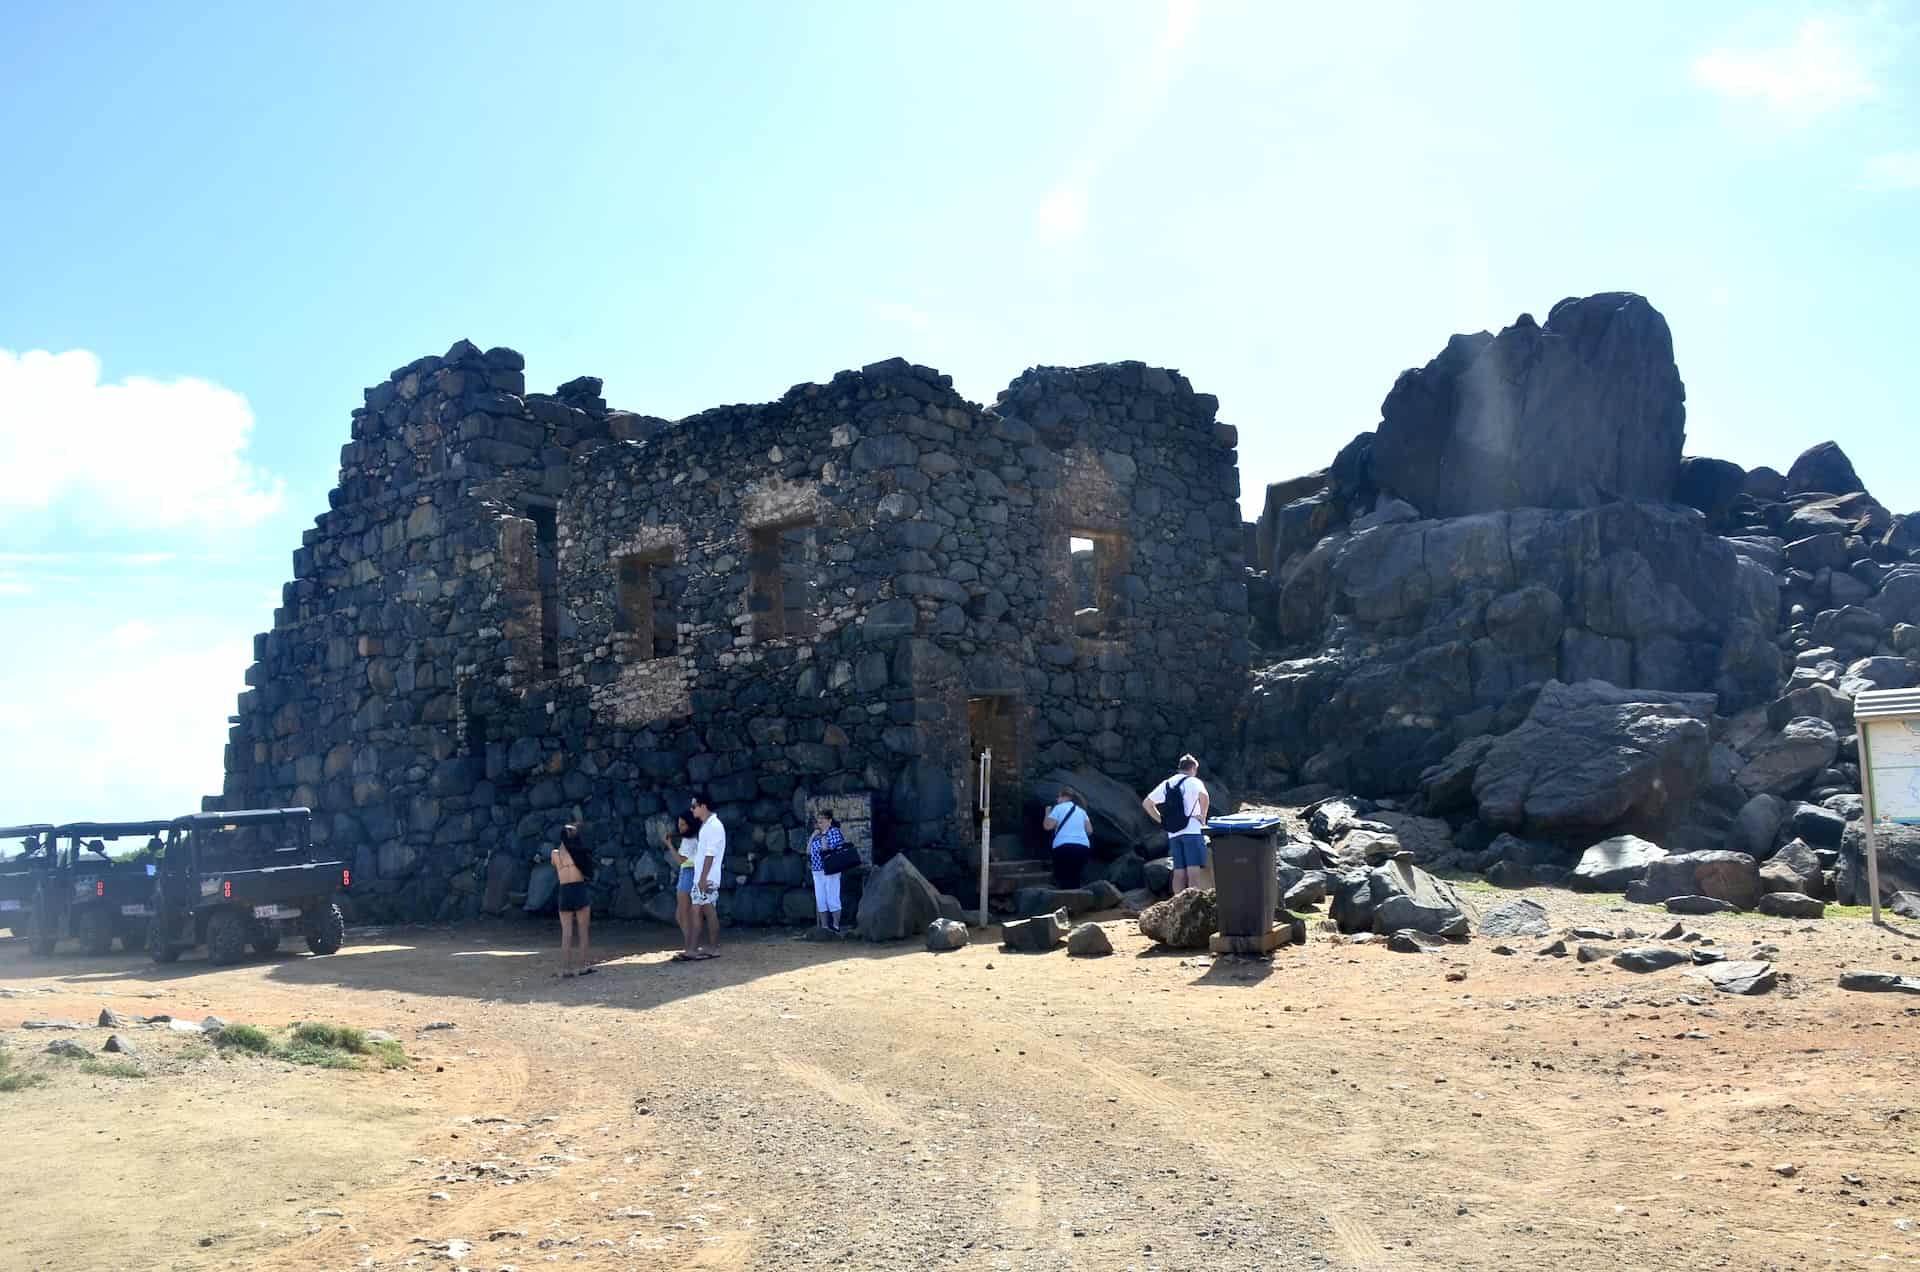 Bushiribana Gold Mill ruins